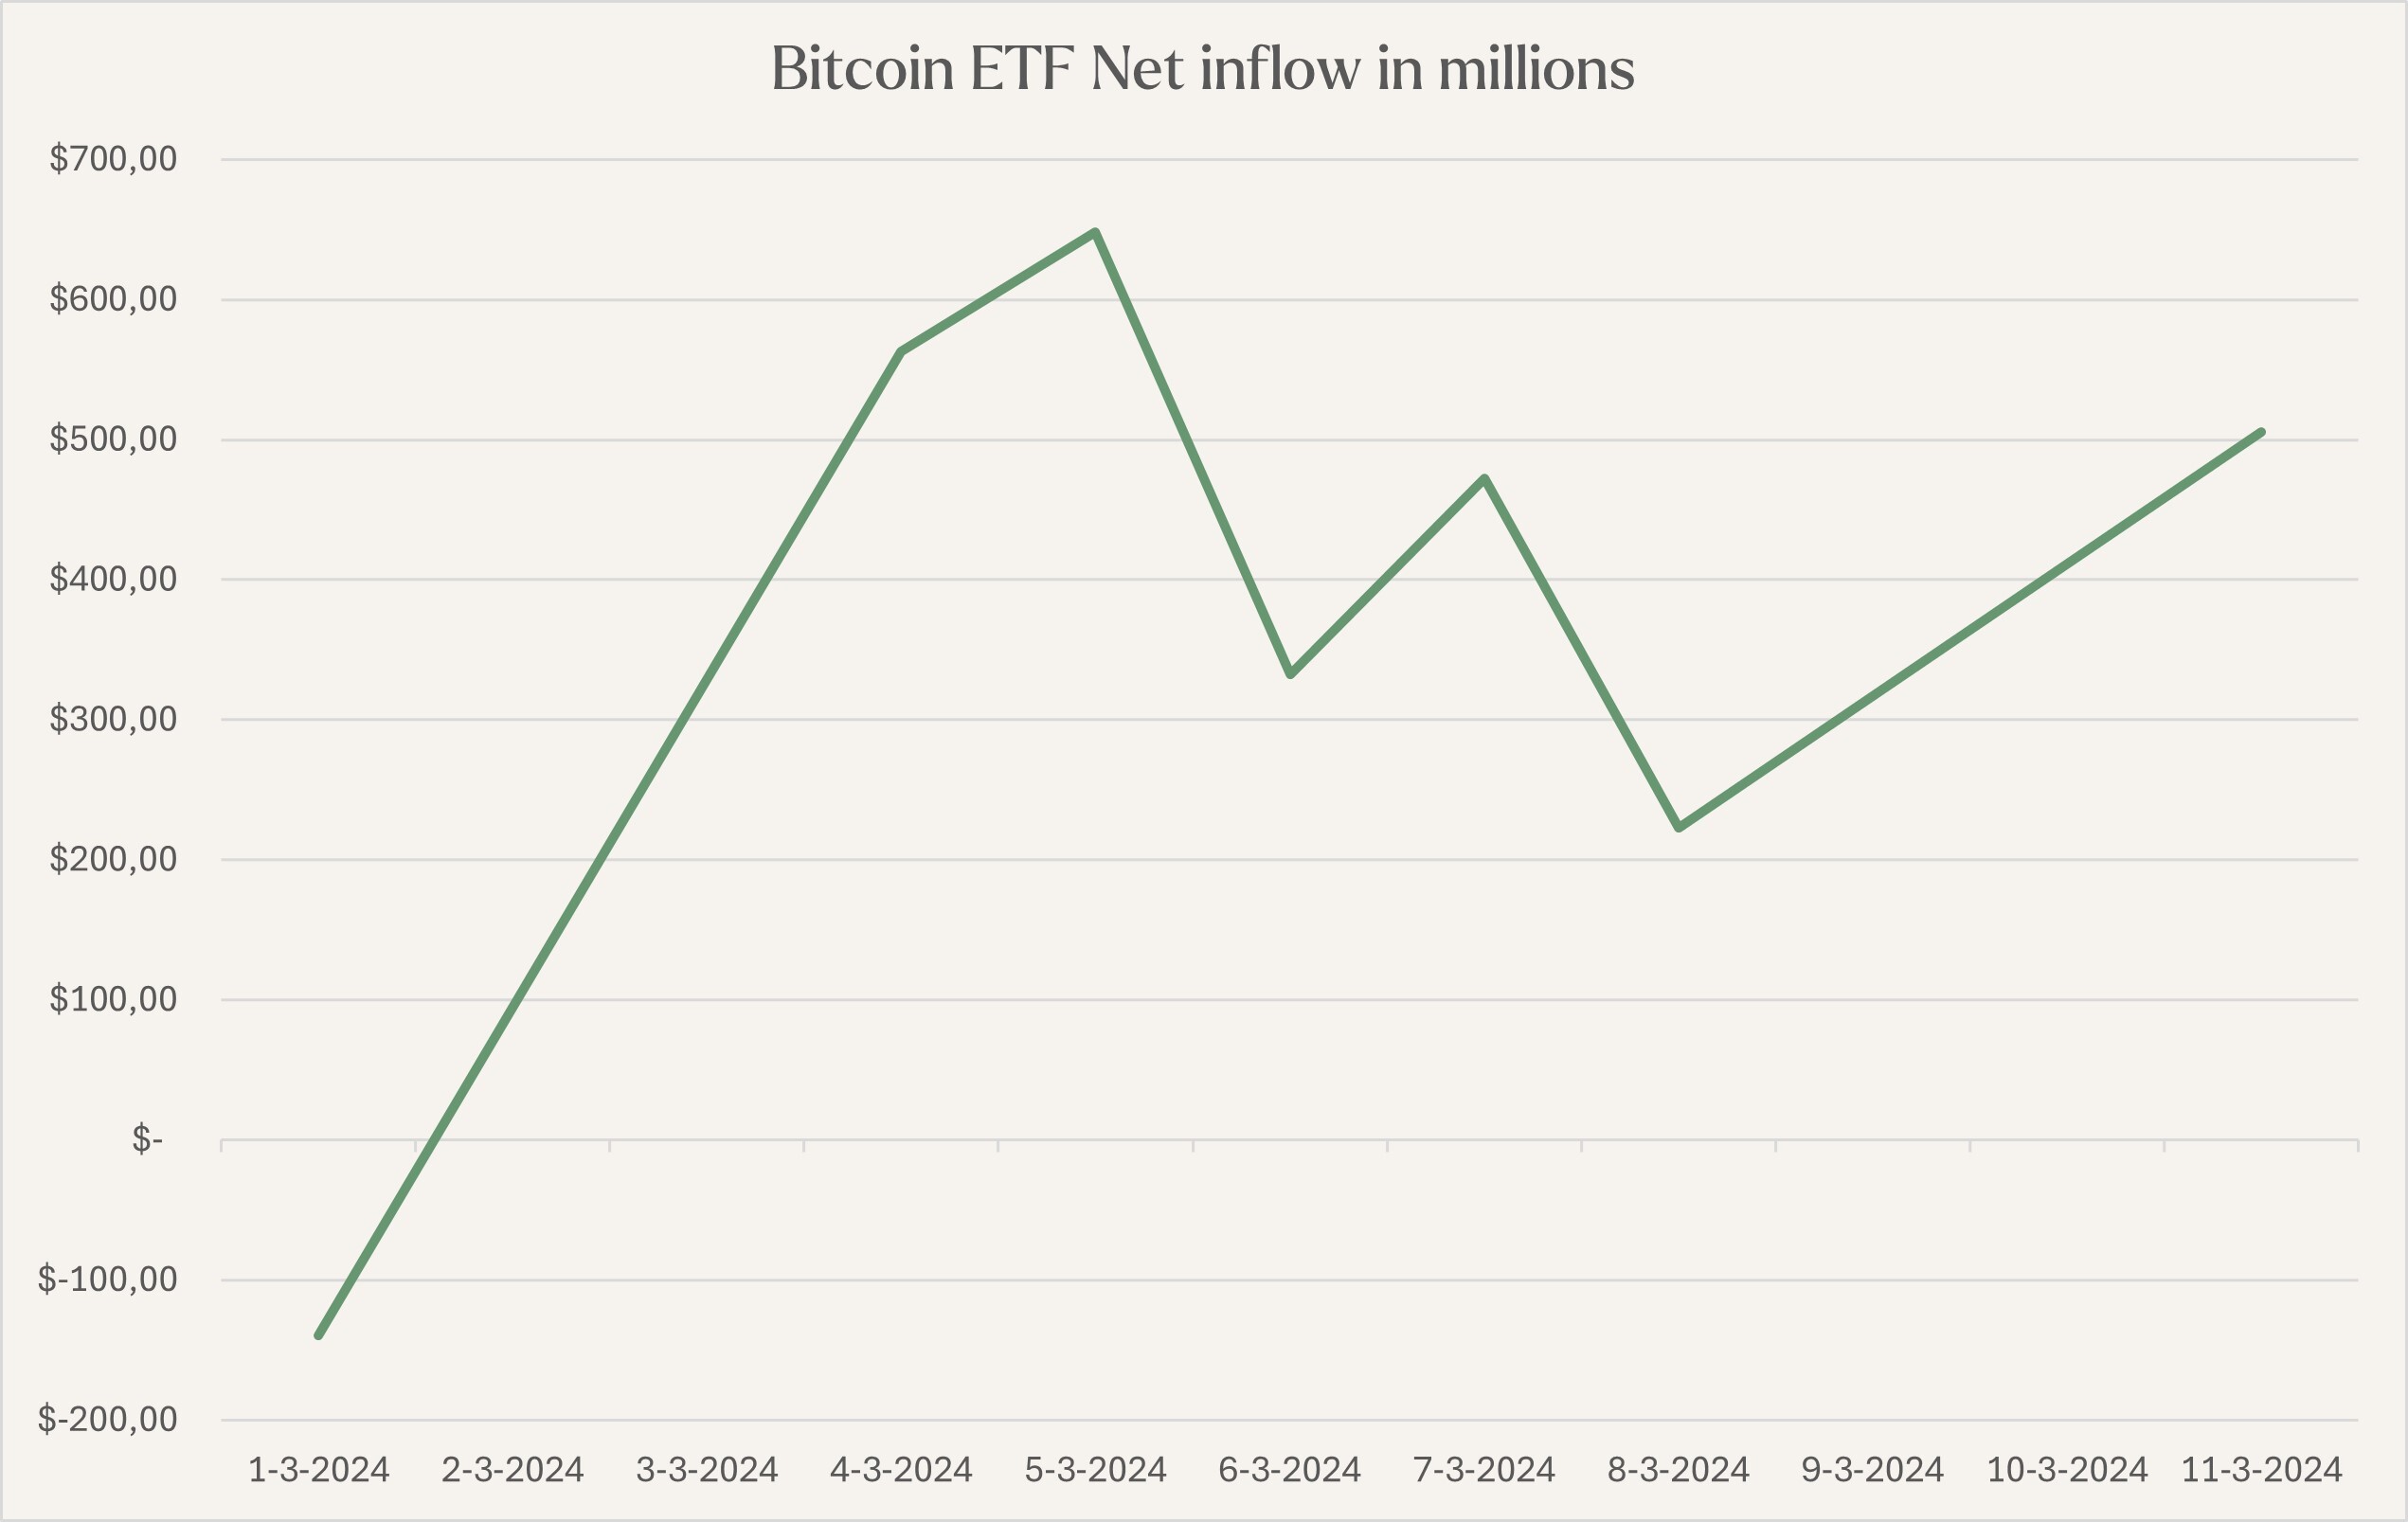 Bitcoin spot ETF inflows